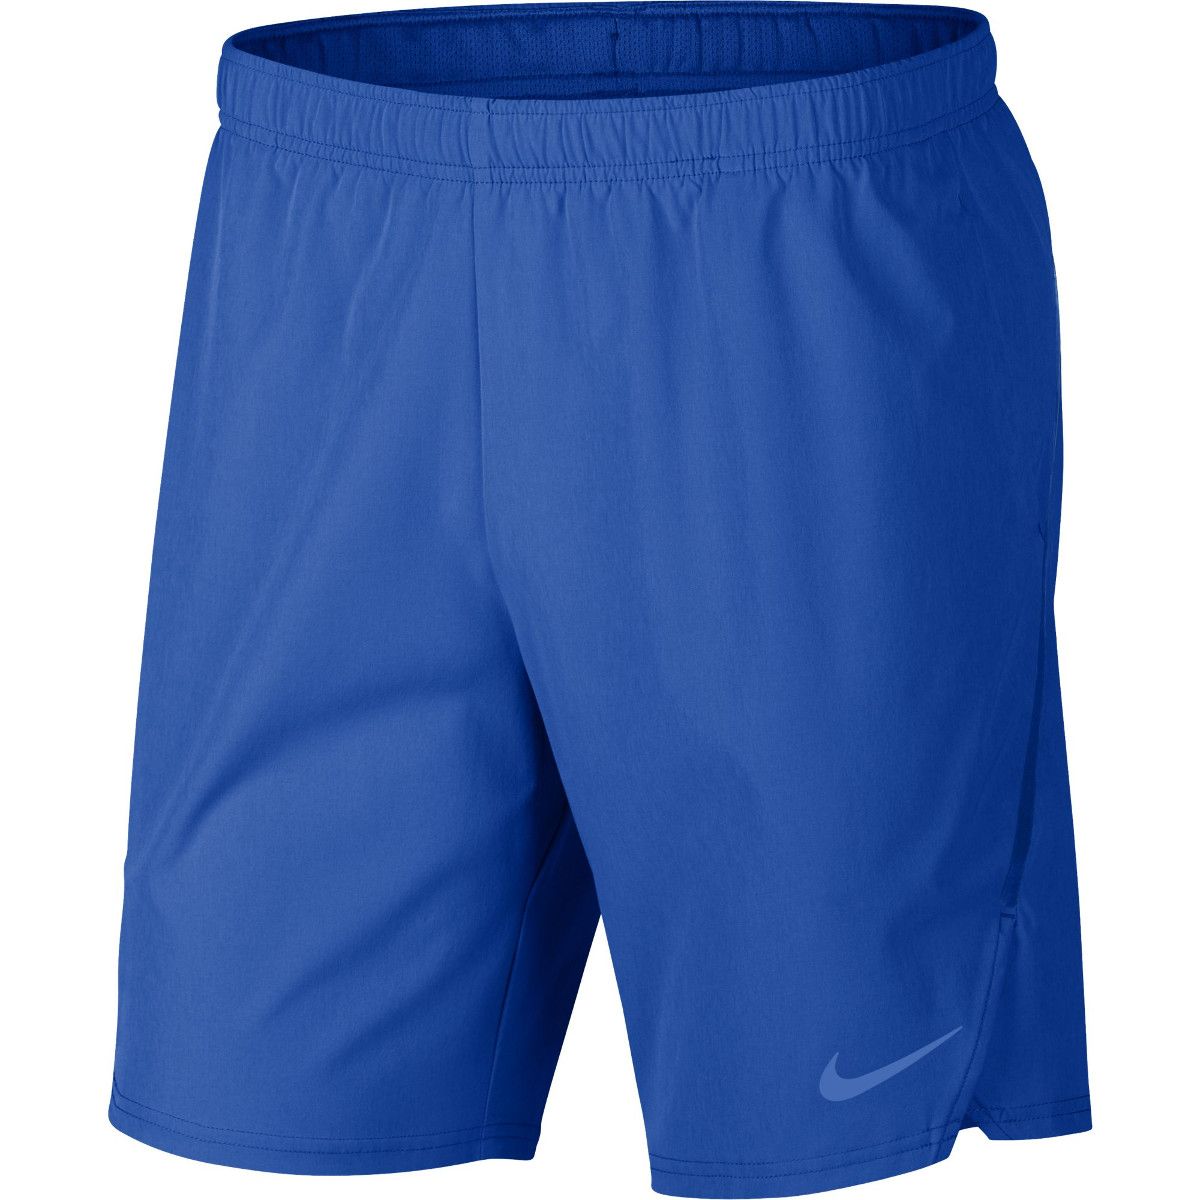 NikeCourt Flex Ace 9 Men's Tennis Shorts 887515-403